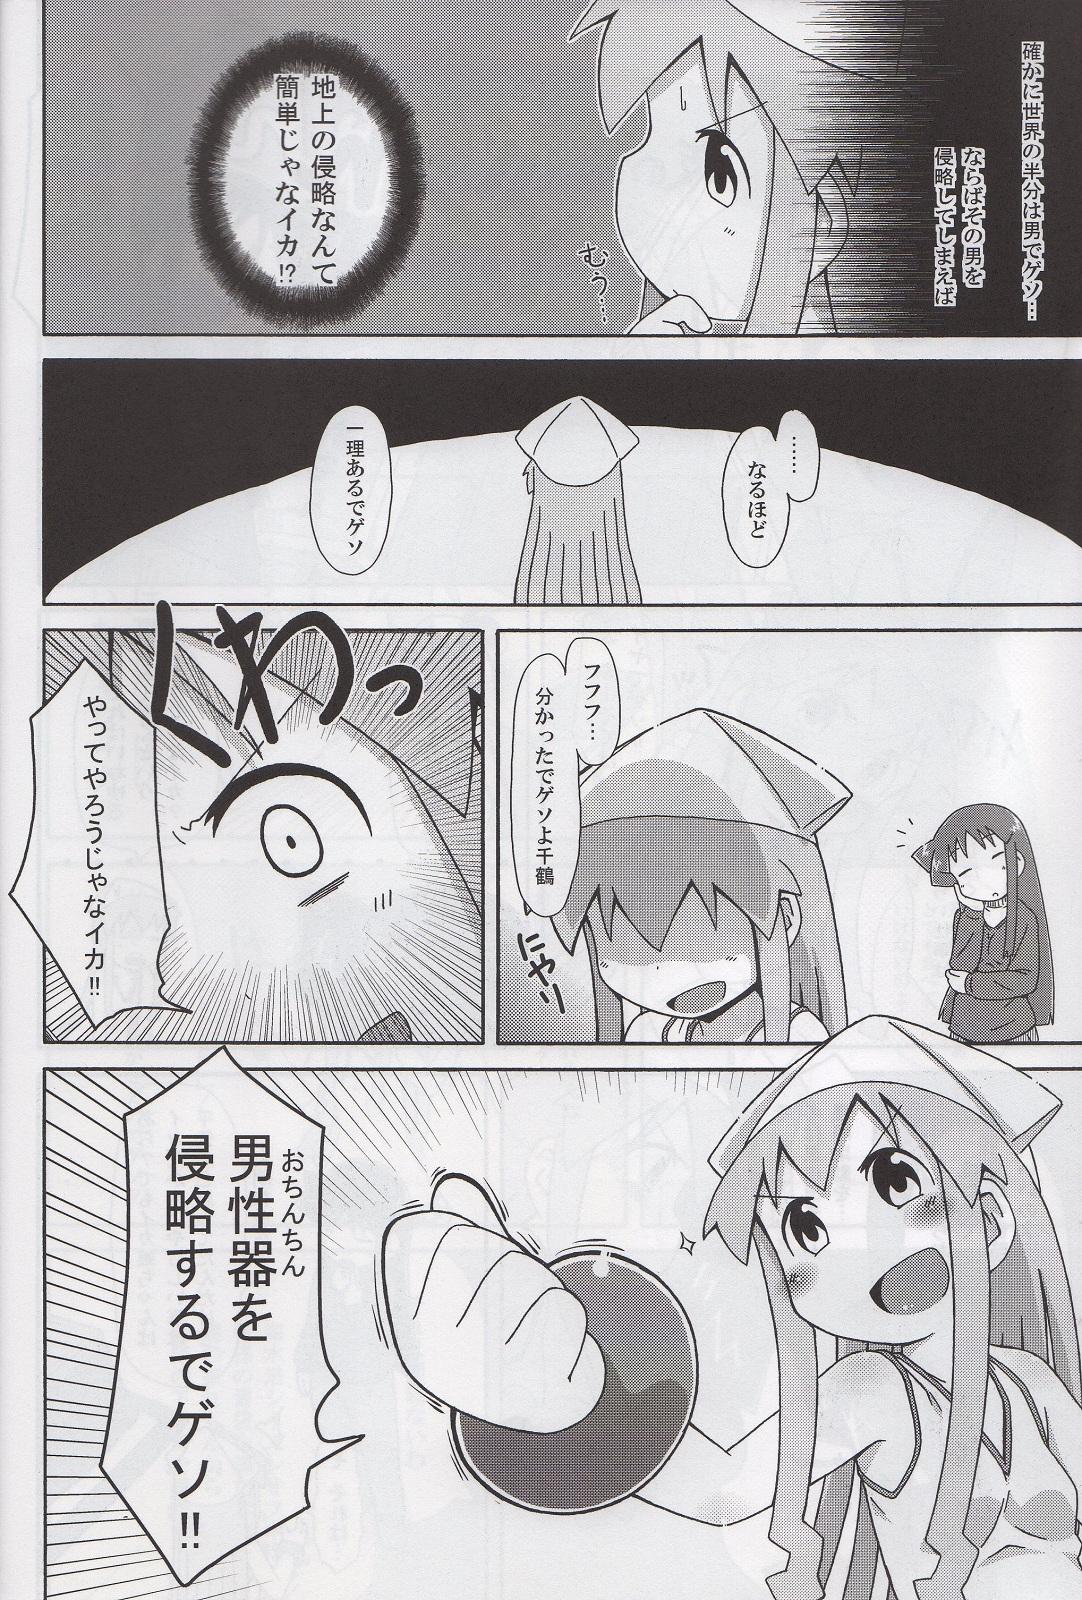 Jacking Yoru no Ie Lemon he Youkoso!! - Shinryaku ika musume Chunky - Page 5